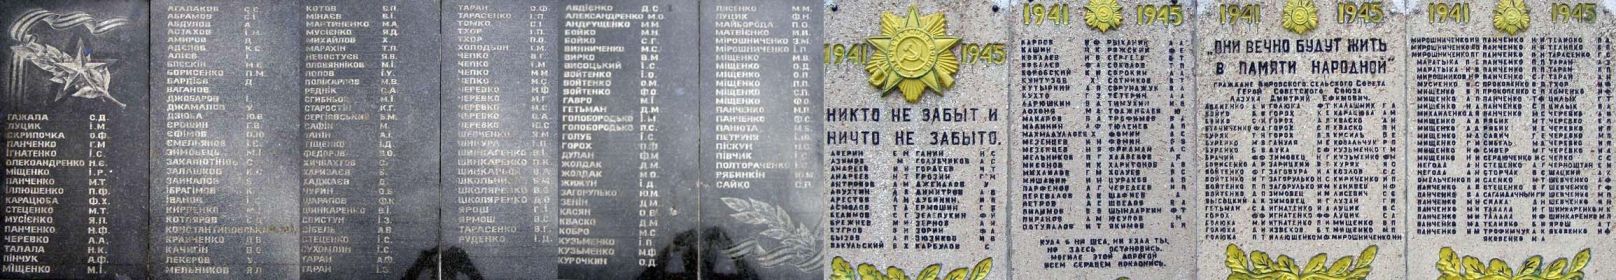 Фото памятника как погибшему